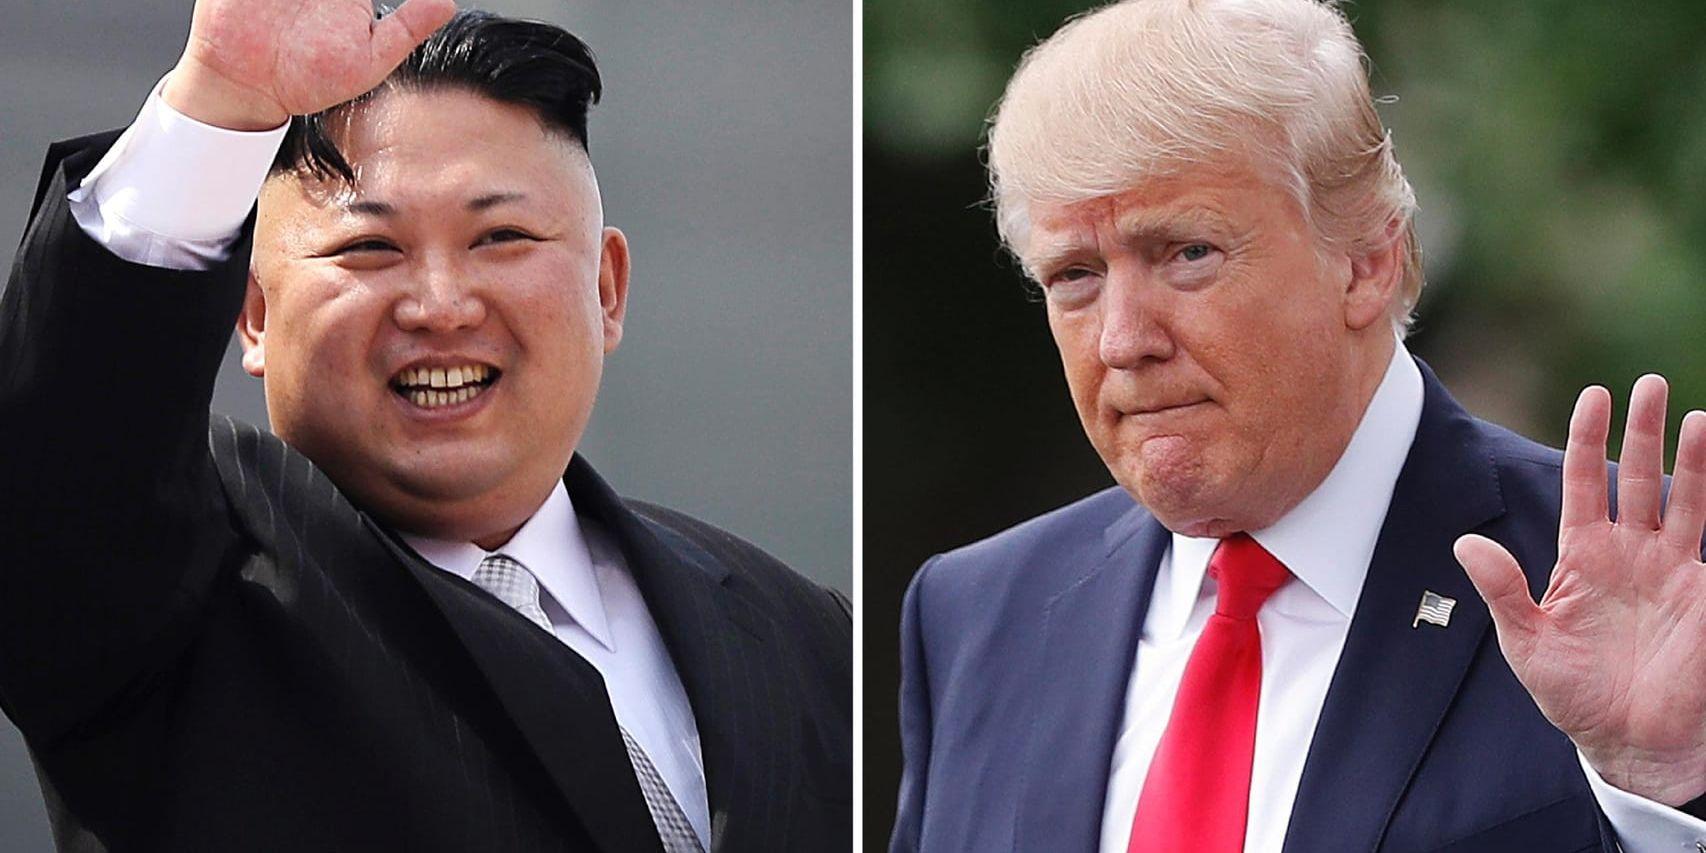 Osäker. Det är okänt vilka pokerspelare Nordkoreas diktator Kim Jong Un och USA:s president Donald Trump är. Men båda gör de världen just nu väldigt osäker.